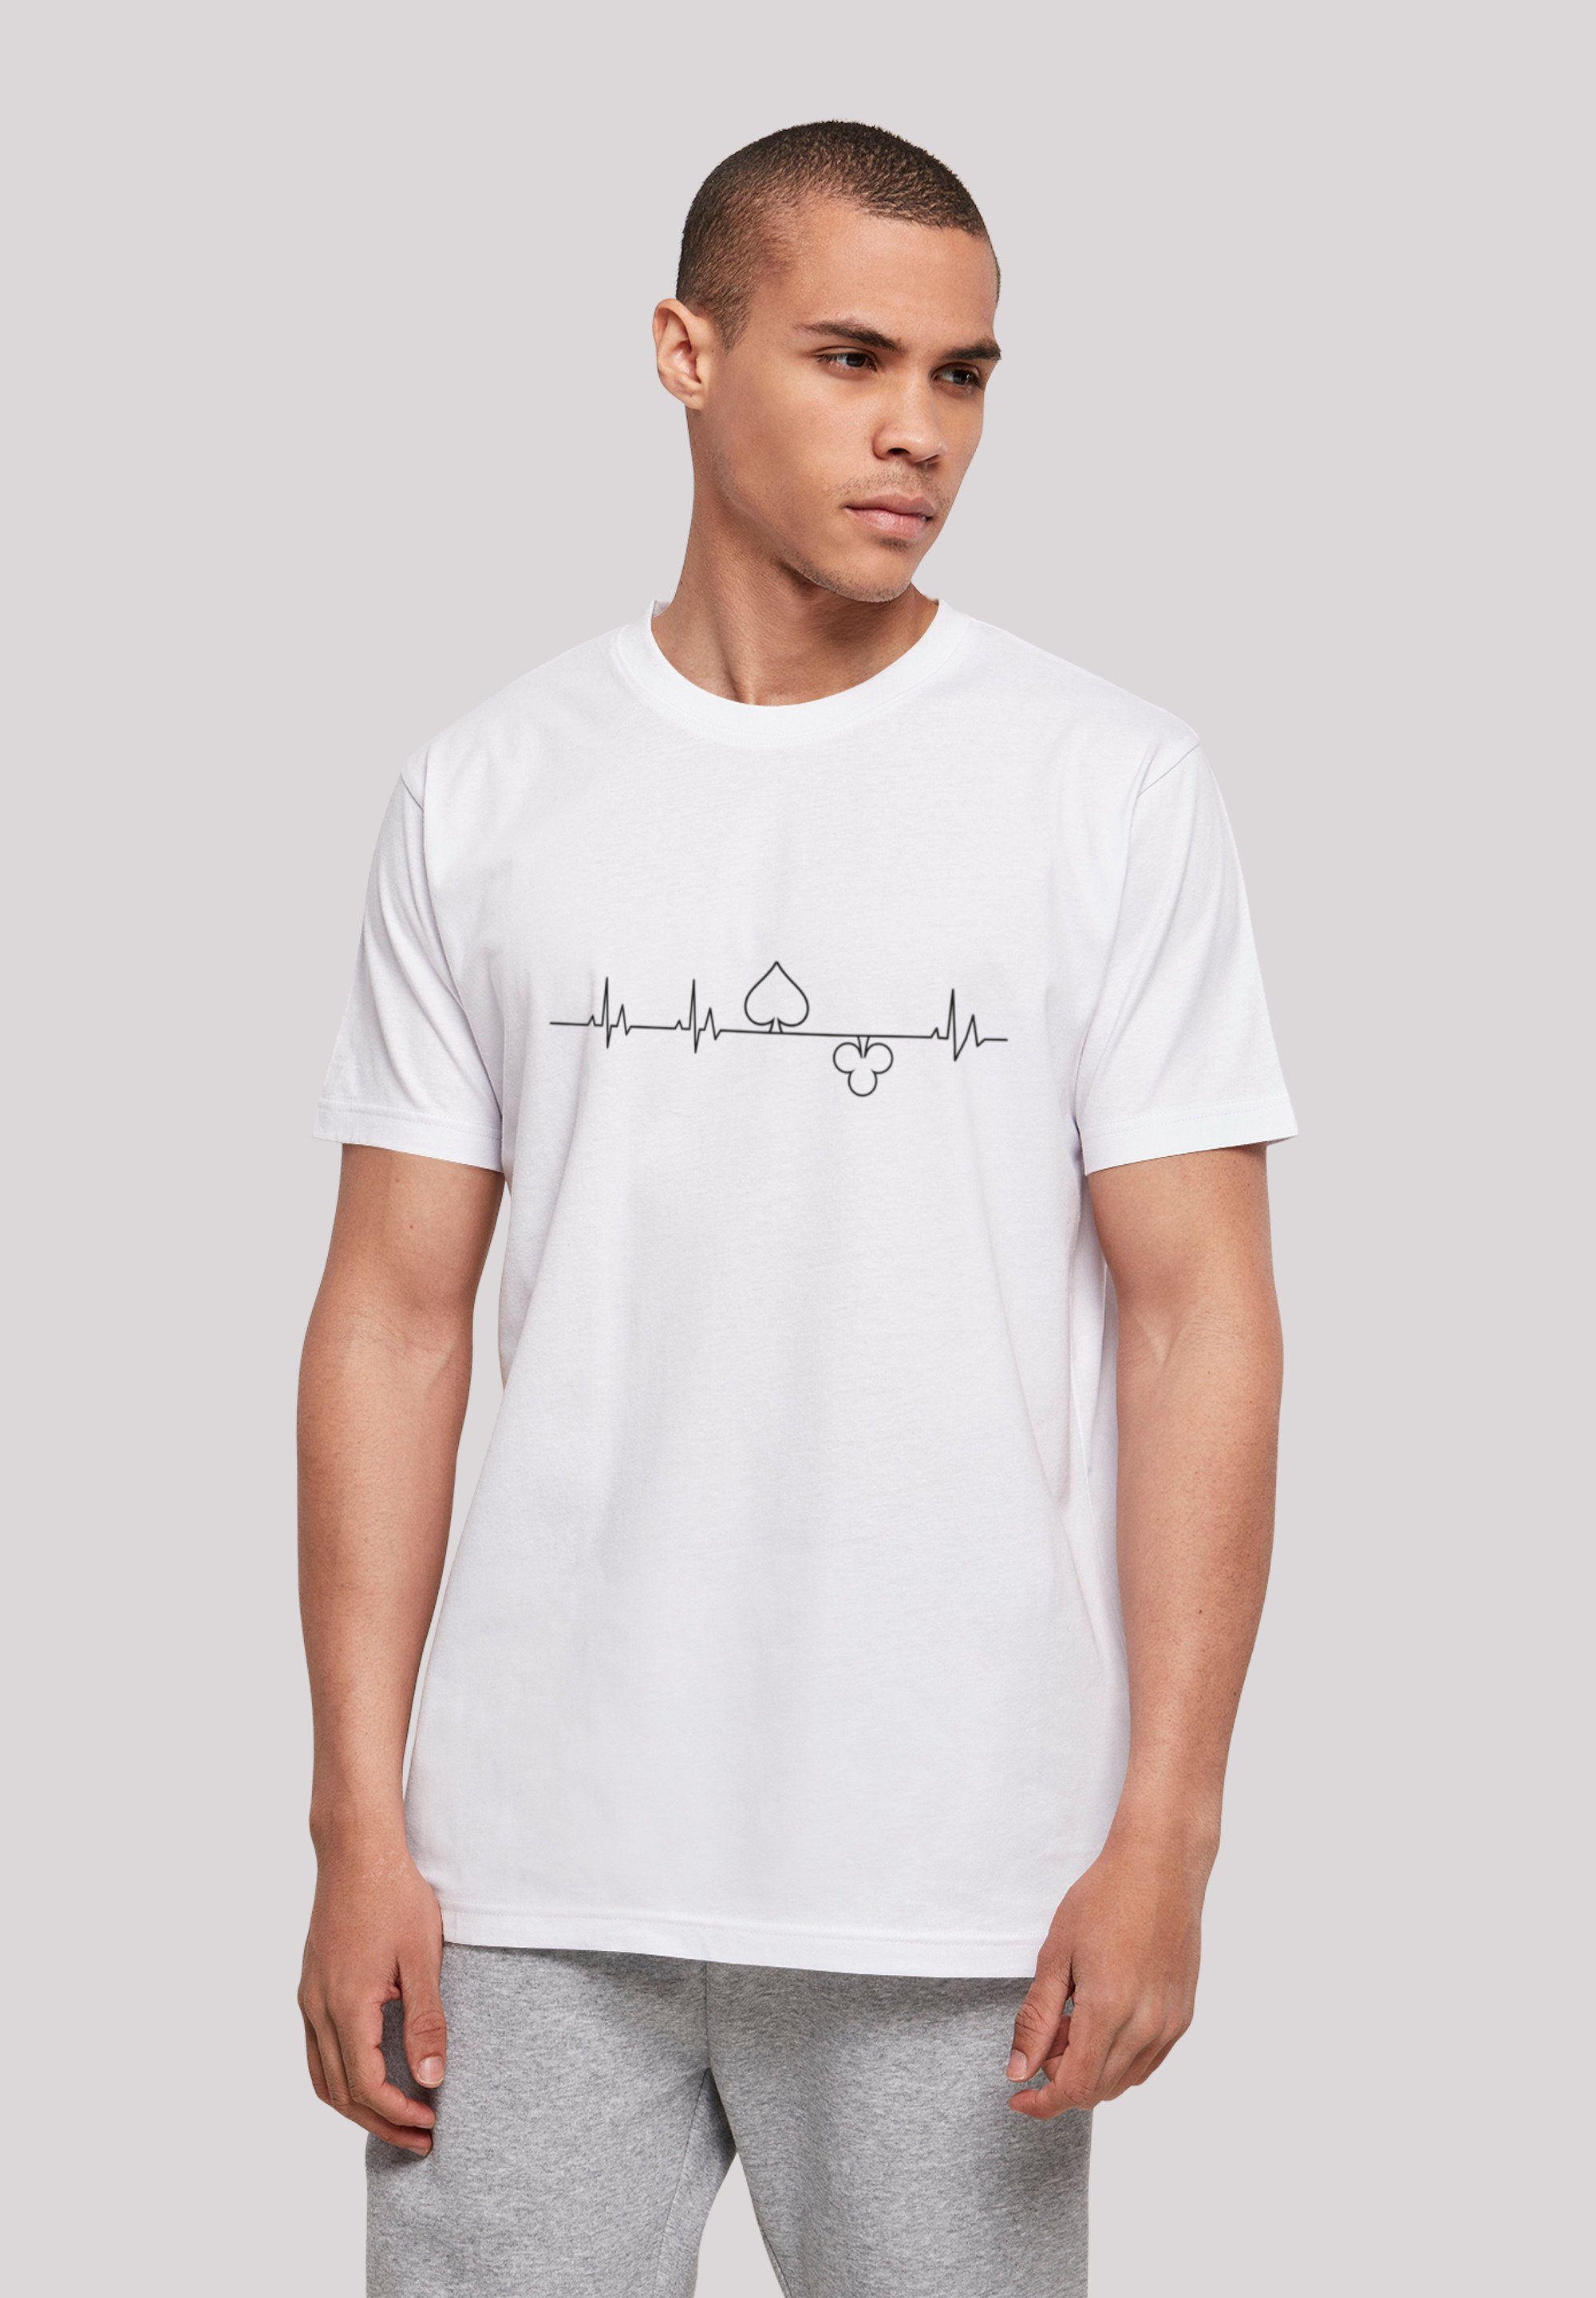 F4NT4STIC T-Shirt Heartbeat Herz Poker Print weiß